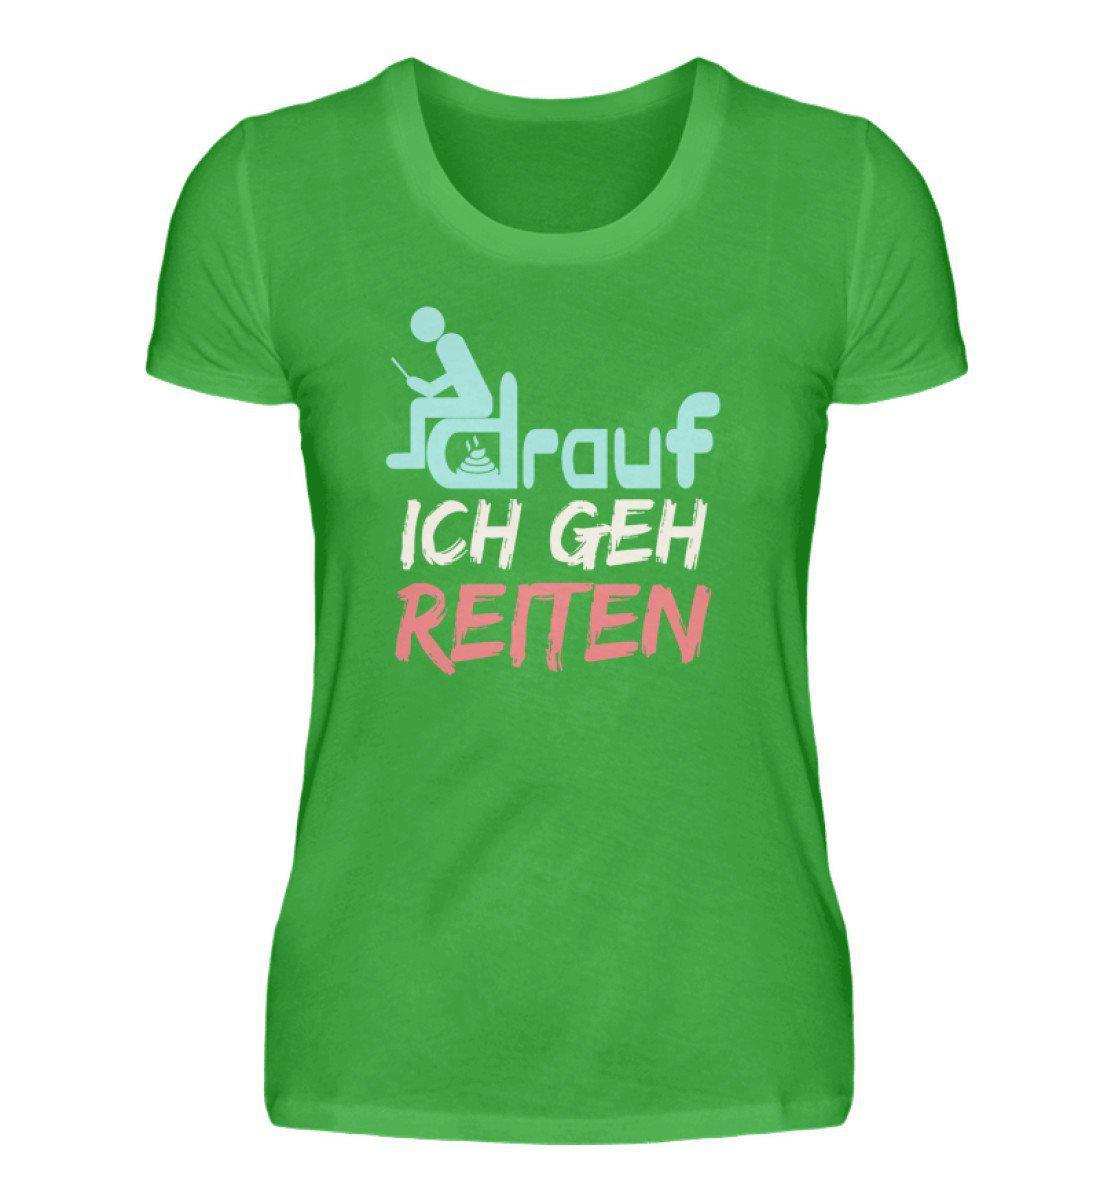 Ich geh reiten · Damen T-Shirt-Damen Basic T-Shirt-Green Apple-S-Agrarstarz